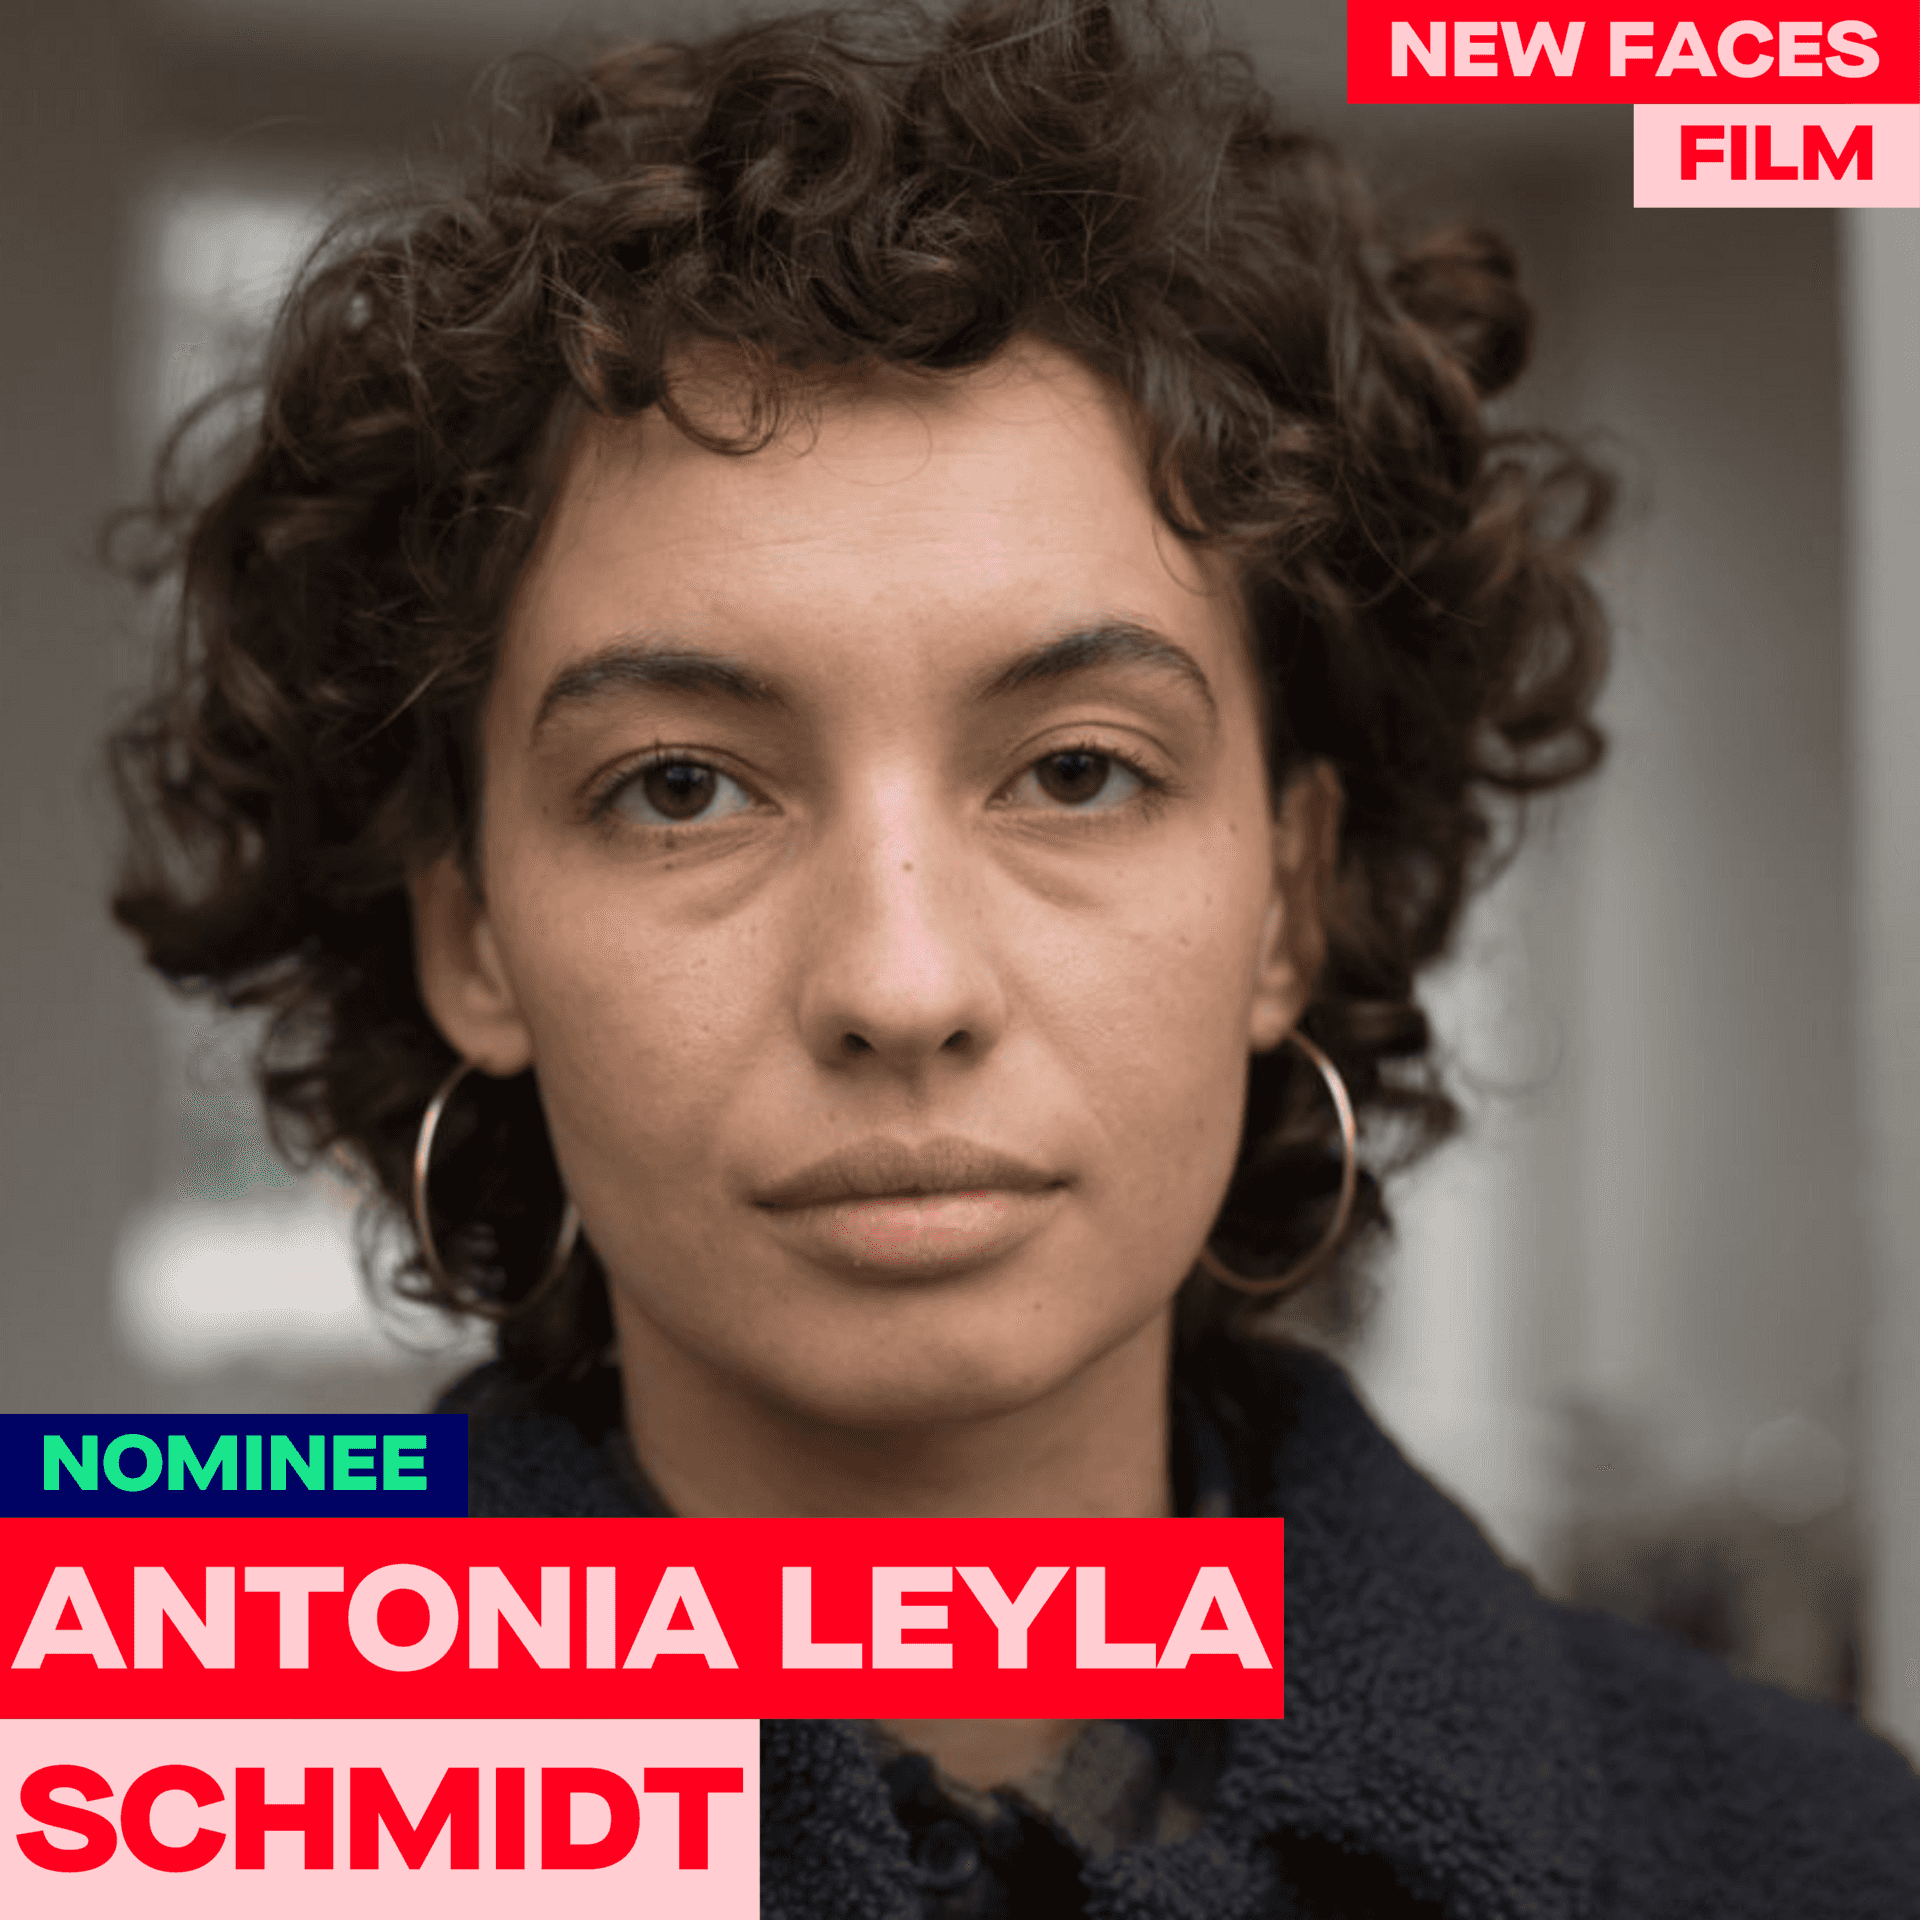 Antonia Leyla Schmidt